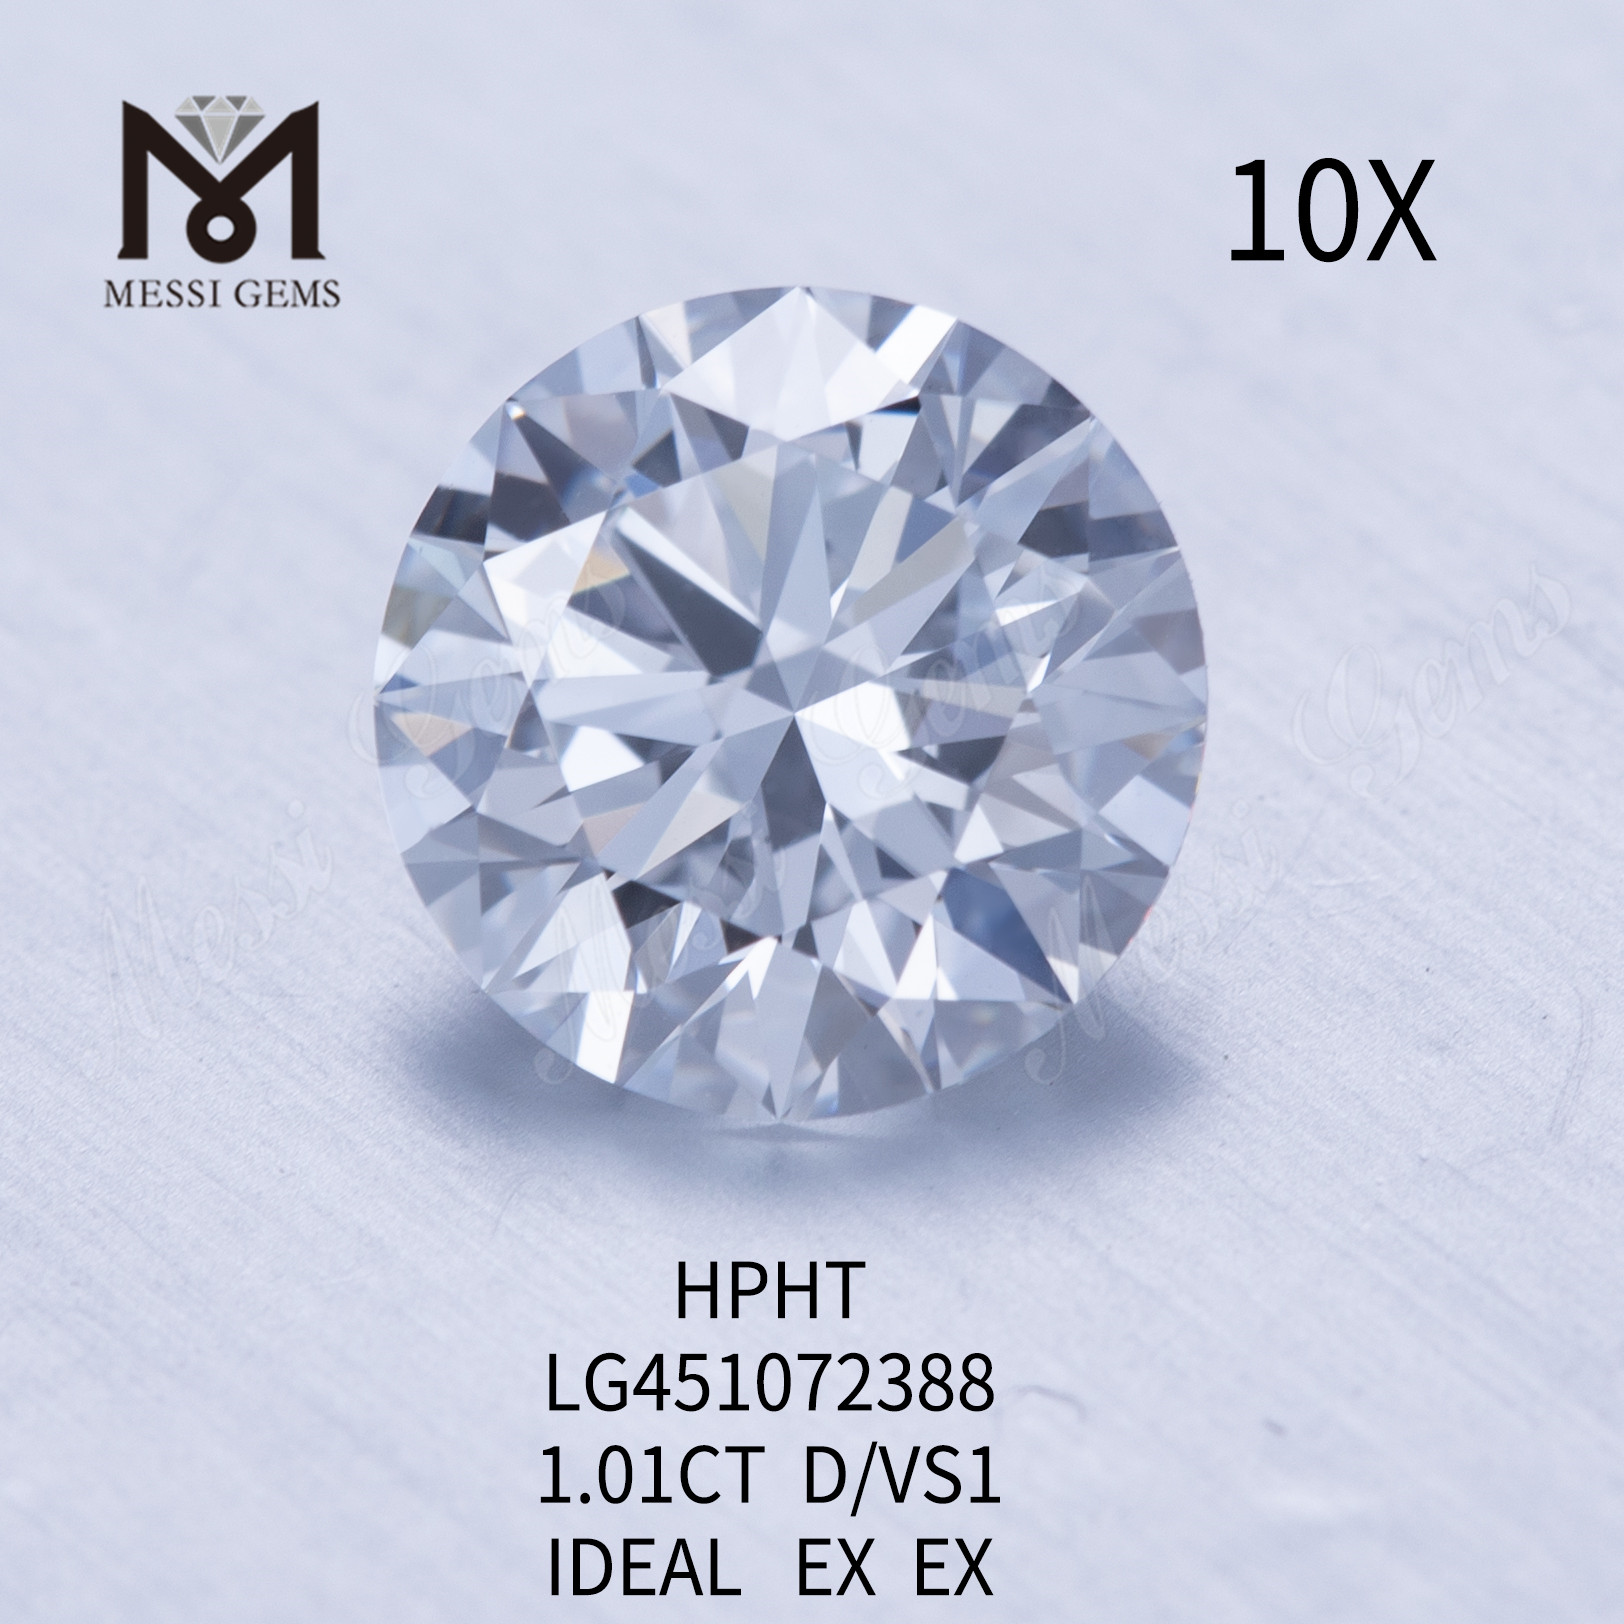 1,01 ct D VS1 Runder, im Labor gezüchteter Diamant HPHT mit IDEL-Schliff